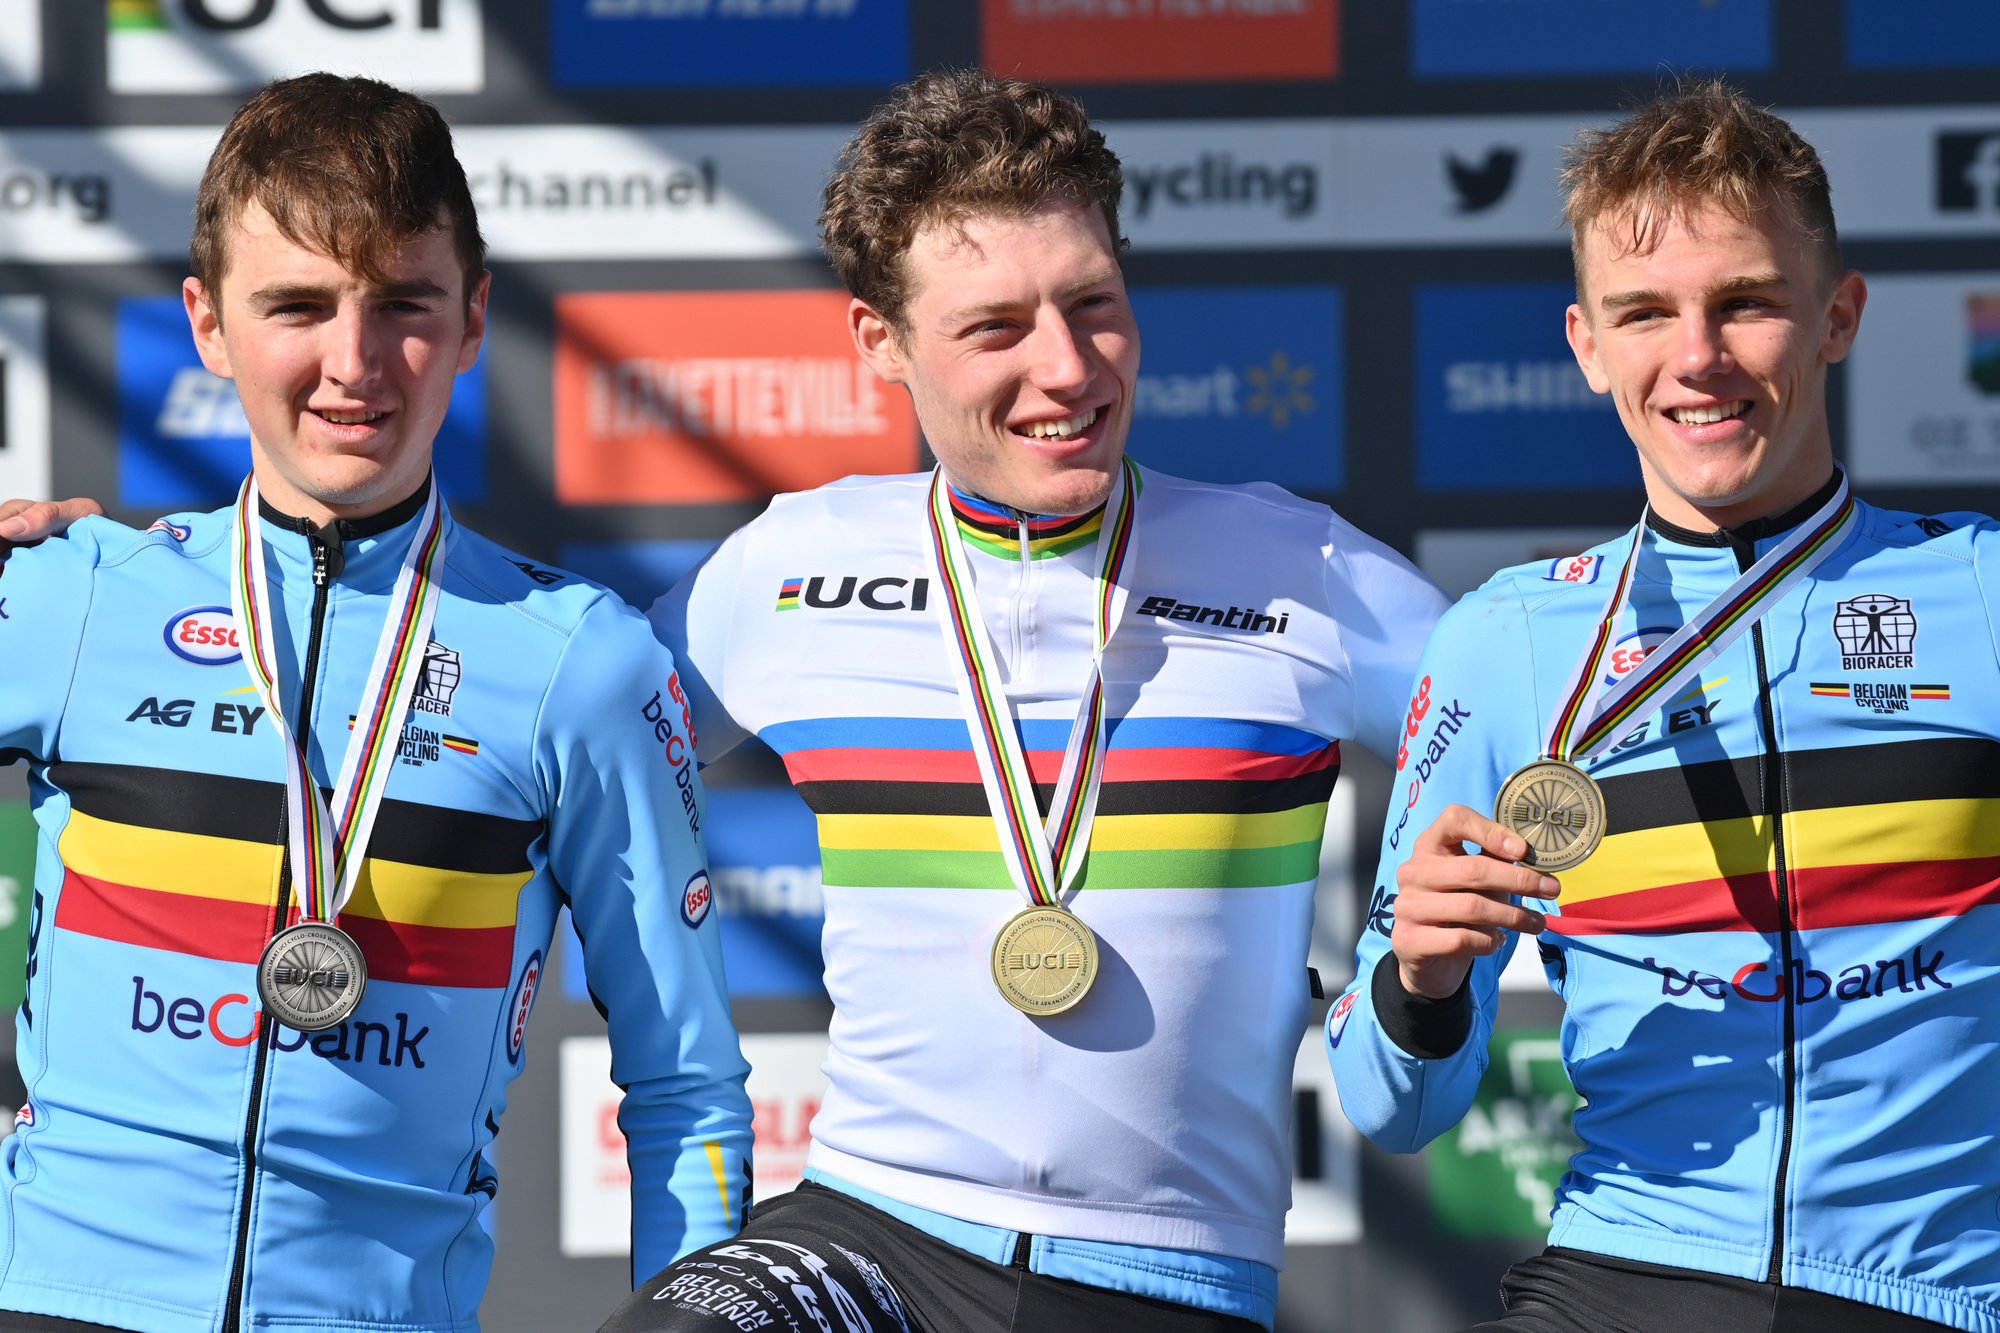 Emiel Verstrynge, Joran Wyseure et Thibau Nys ont offert un podium 100% belge à la course des espoirs., belga